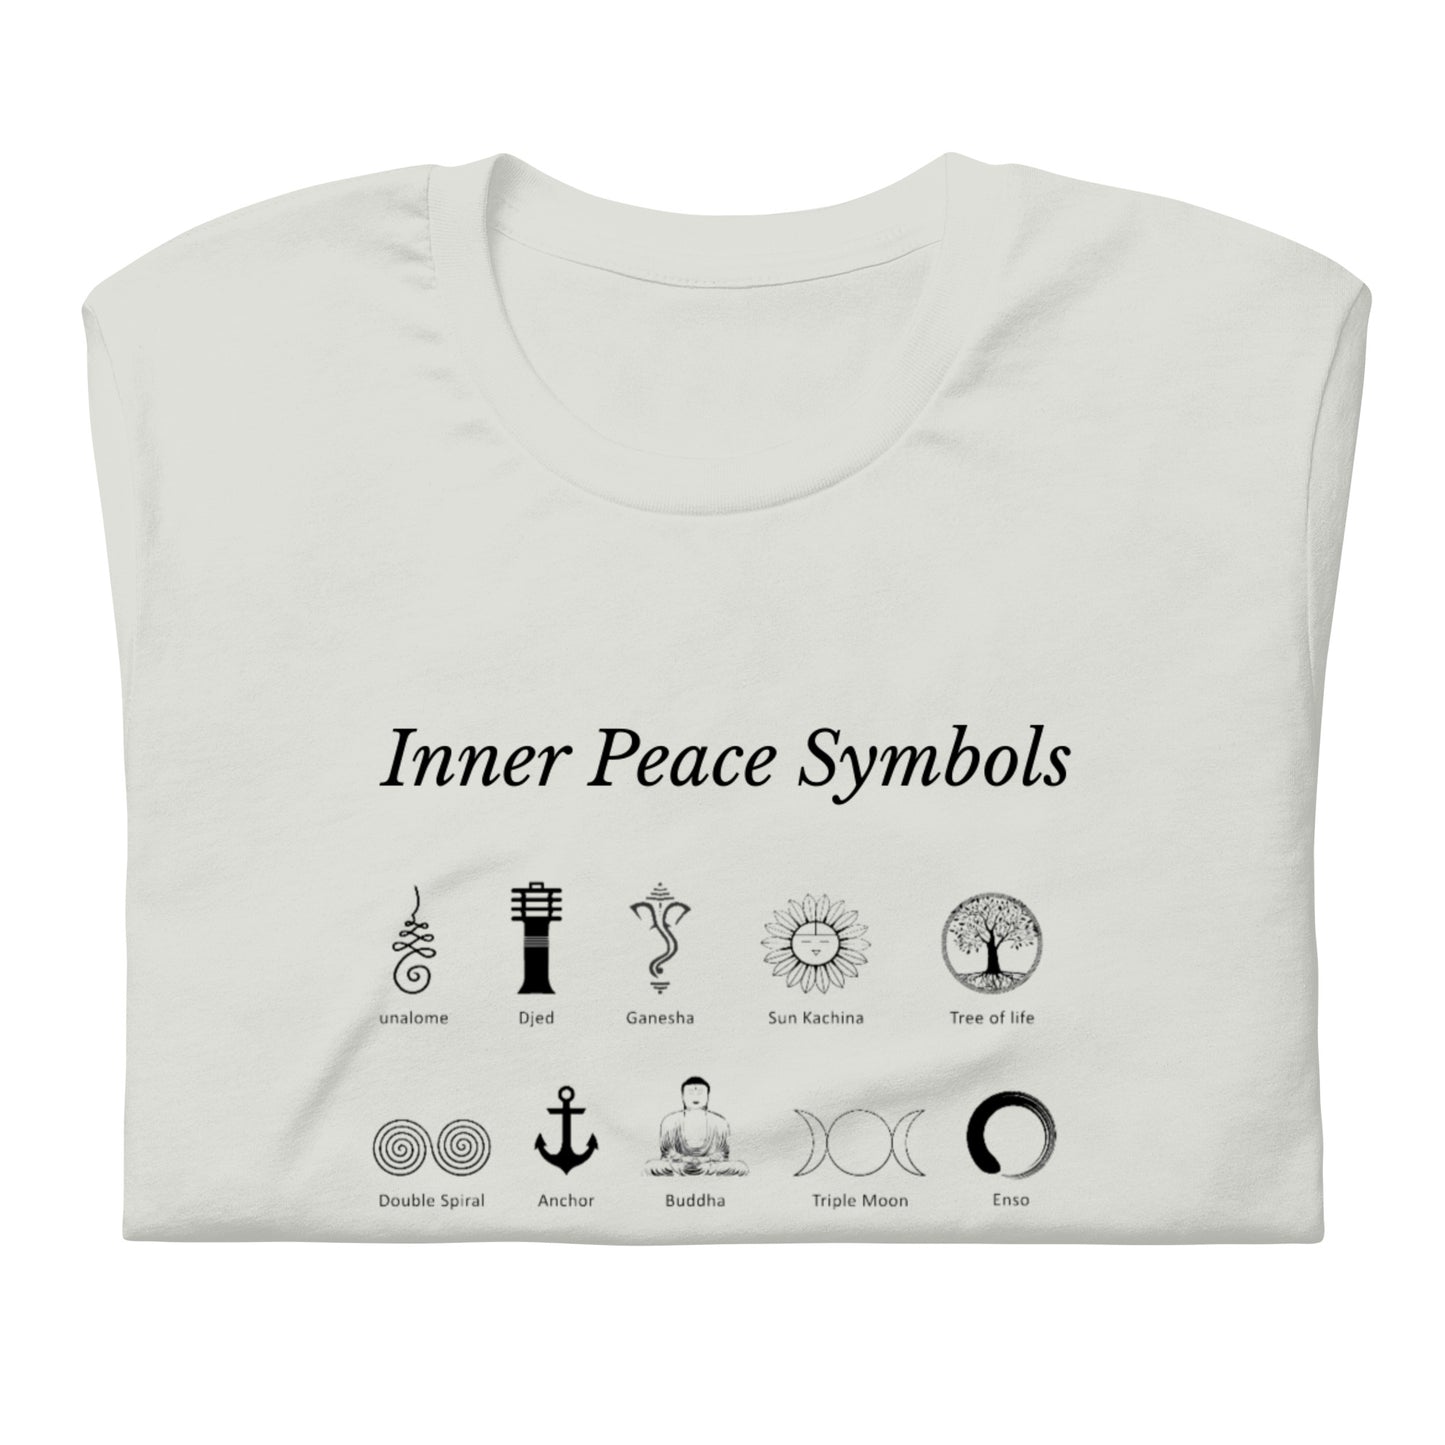 Inner Peace Symbols Tee